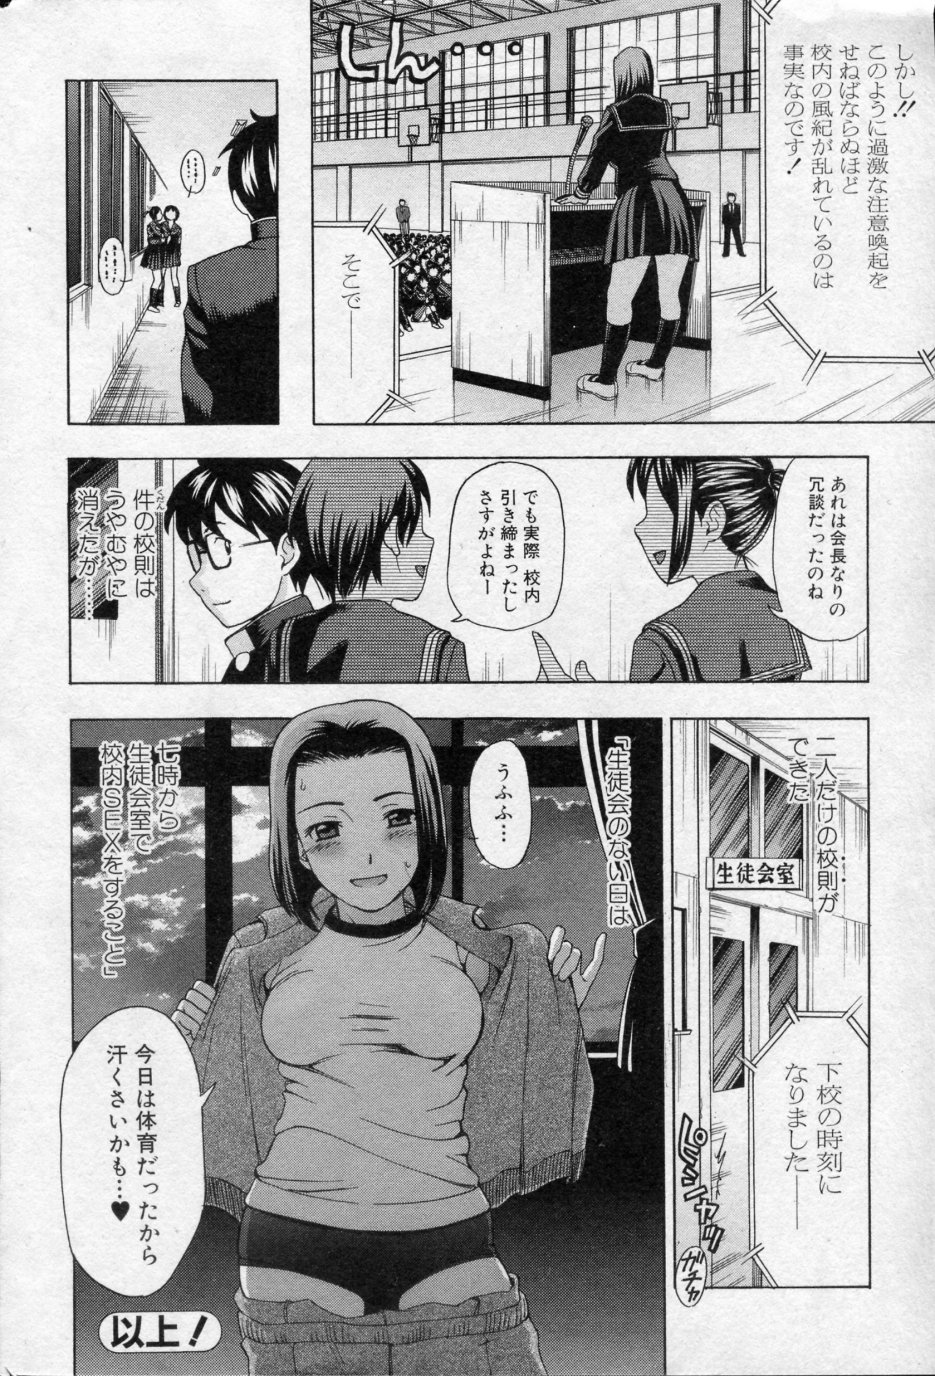 [Shiraishi Nagisa] Kounai Sex Kinshirei! (Bishoujo Kakumei KIWAME 2010-02 Vol.06) [白石なぎさ] 校内SEX禁止令! (美少女革命 極 Vol.06 2010年02月号)